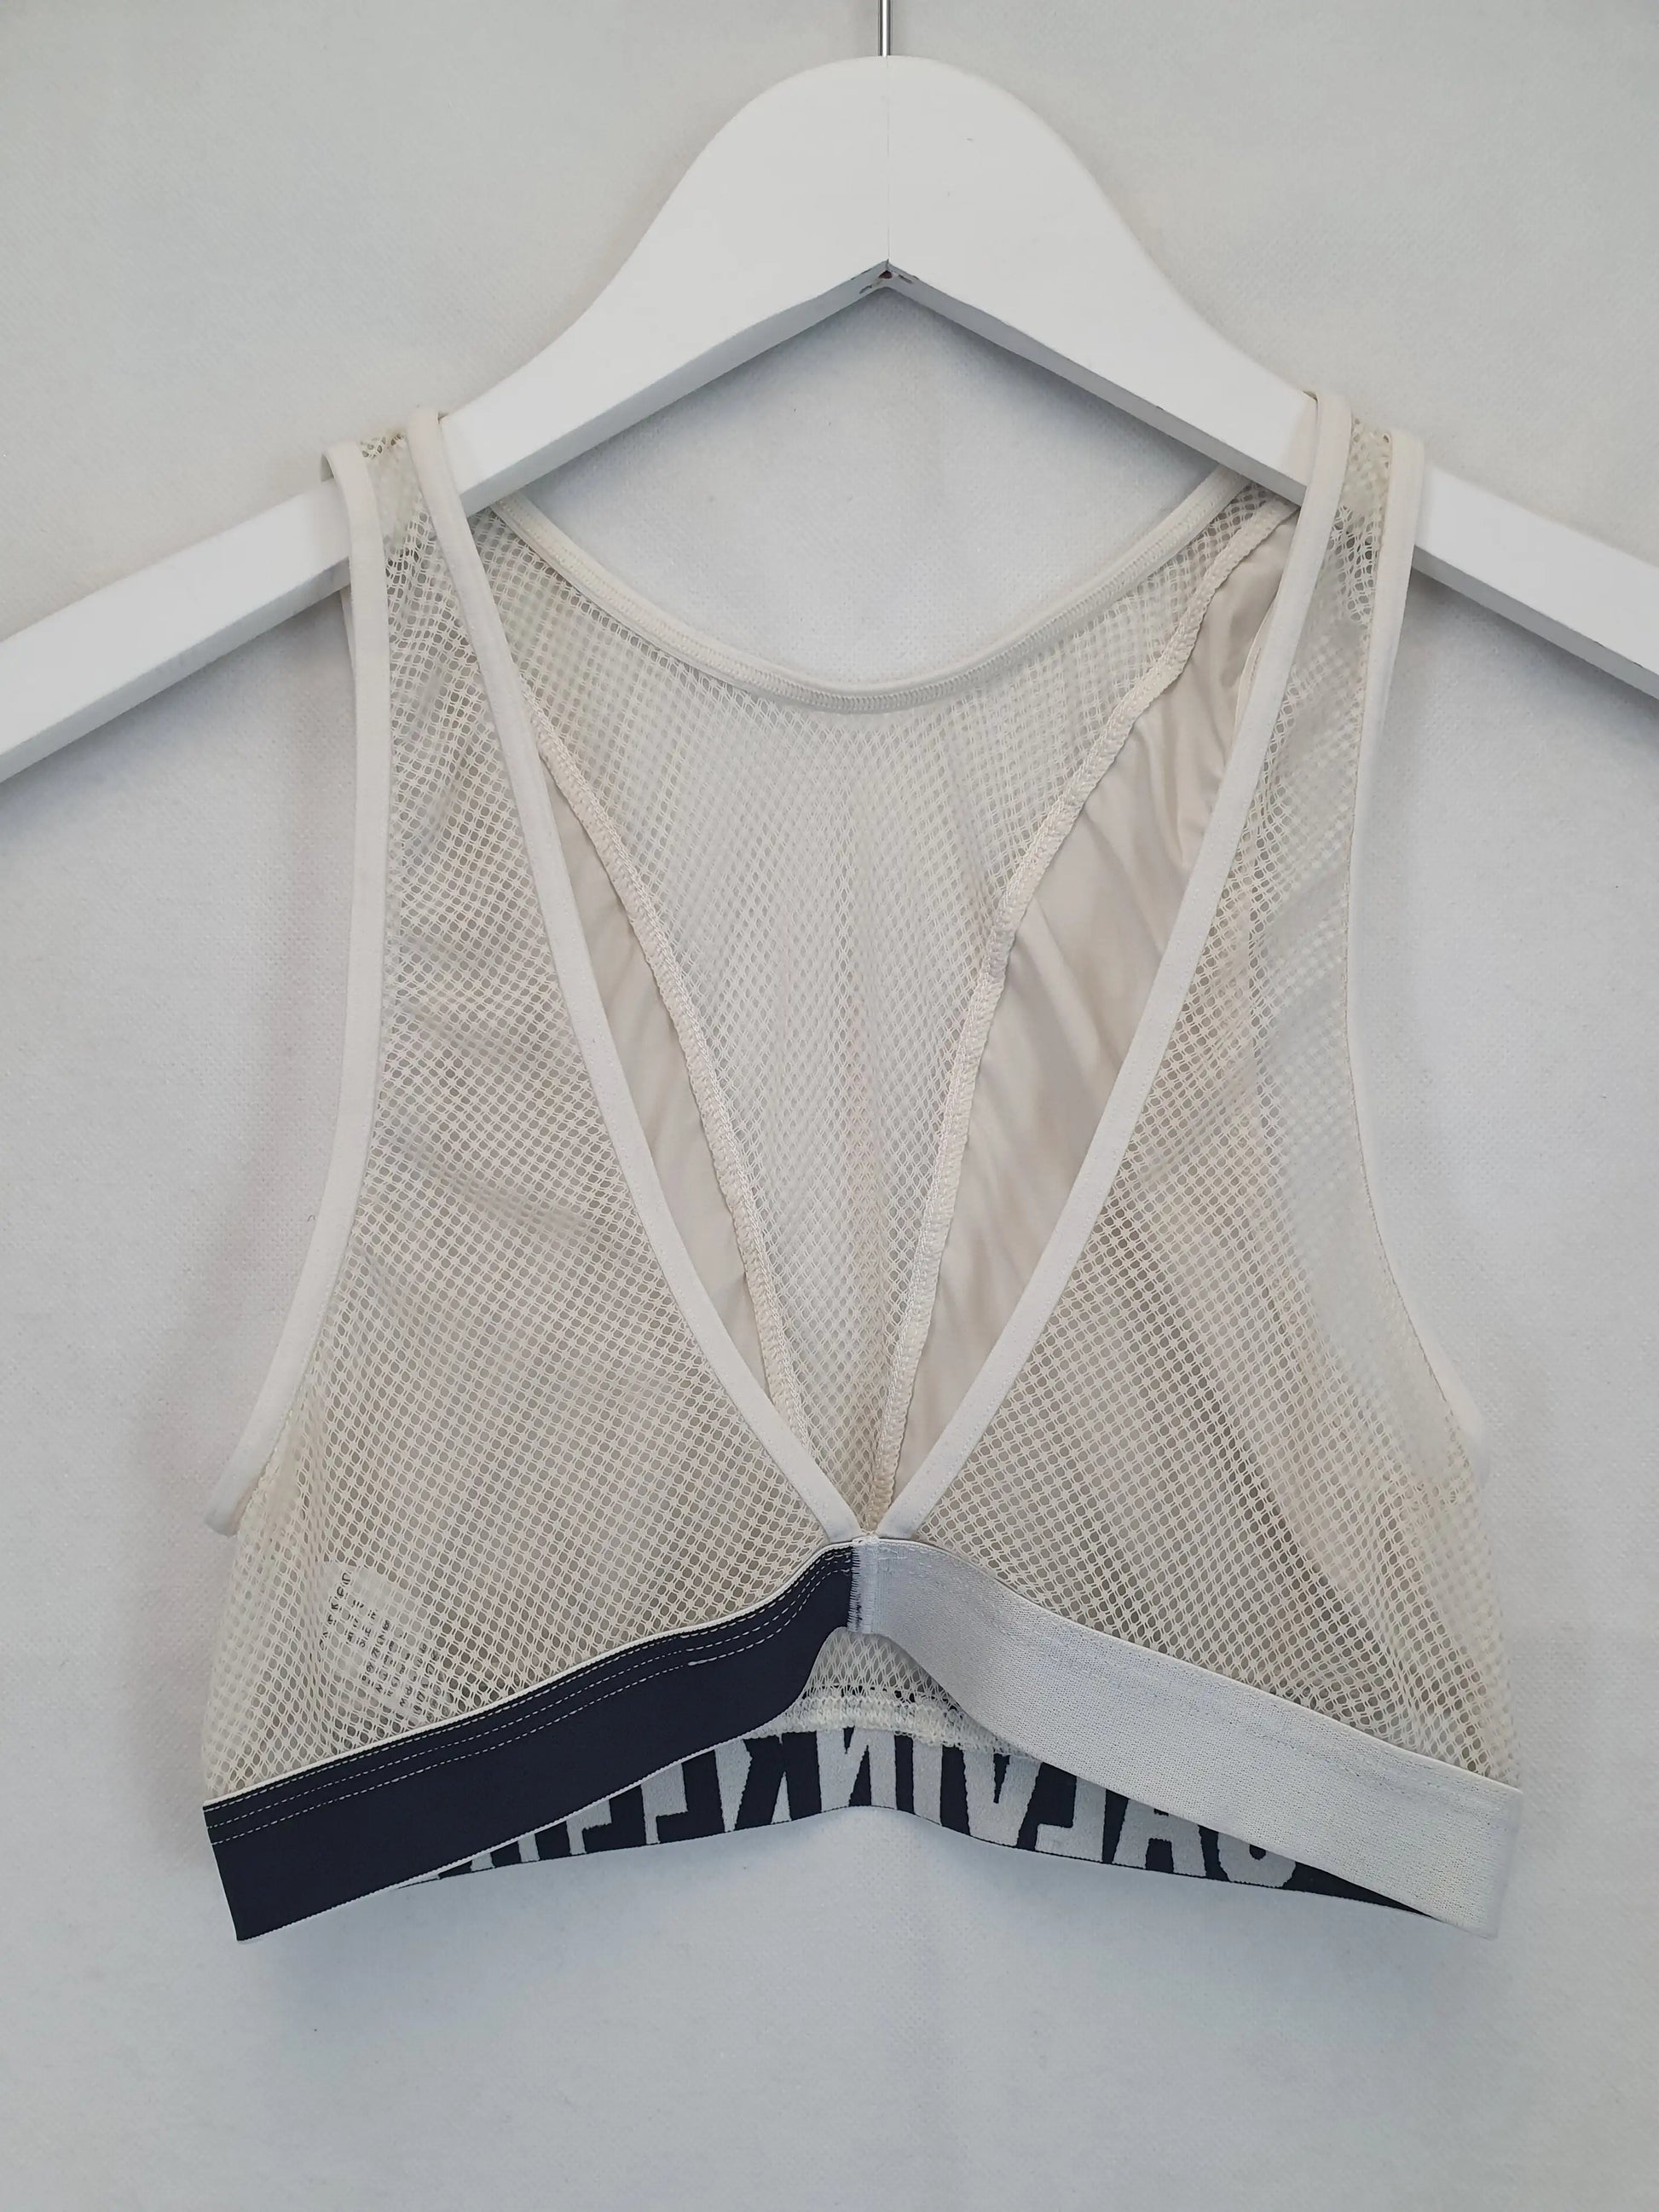 Calvin Klein sporty bra Size 4-6 Inside labels was - Depop